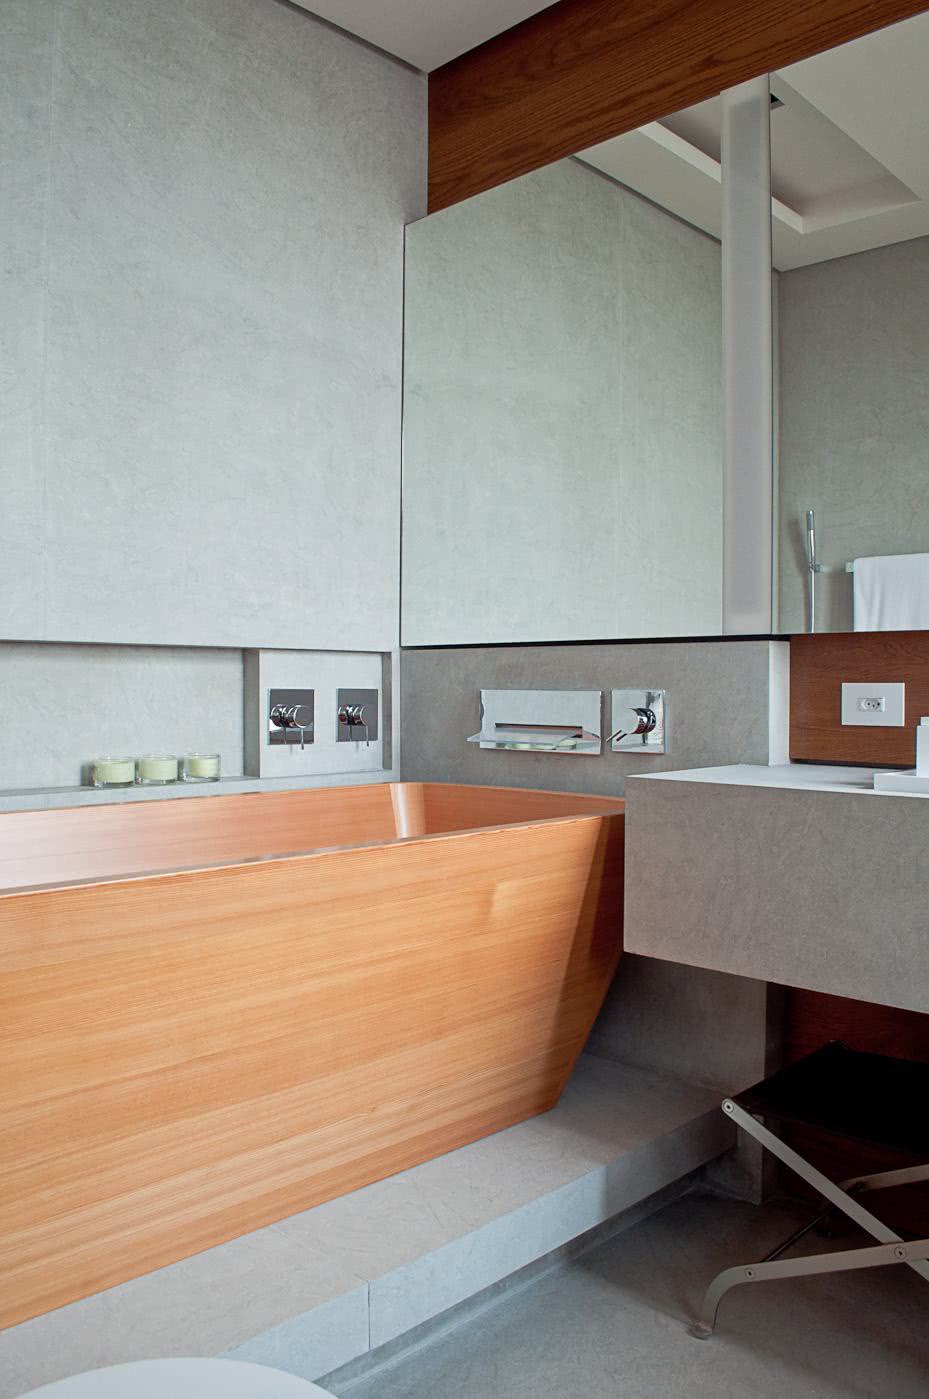 Bathroom with wooden bathtub